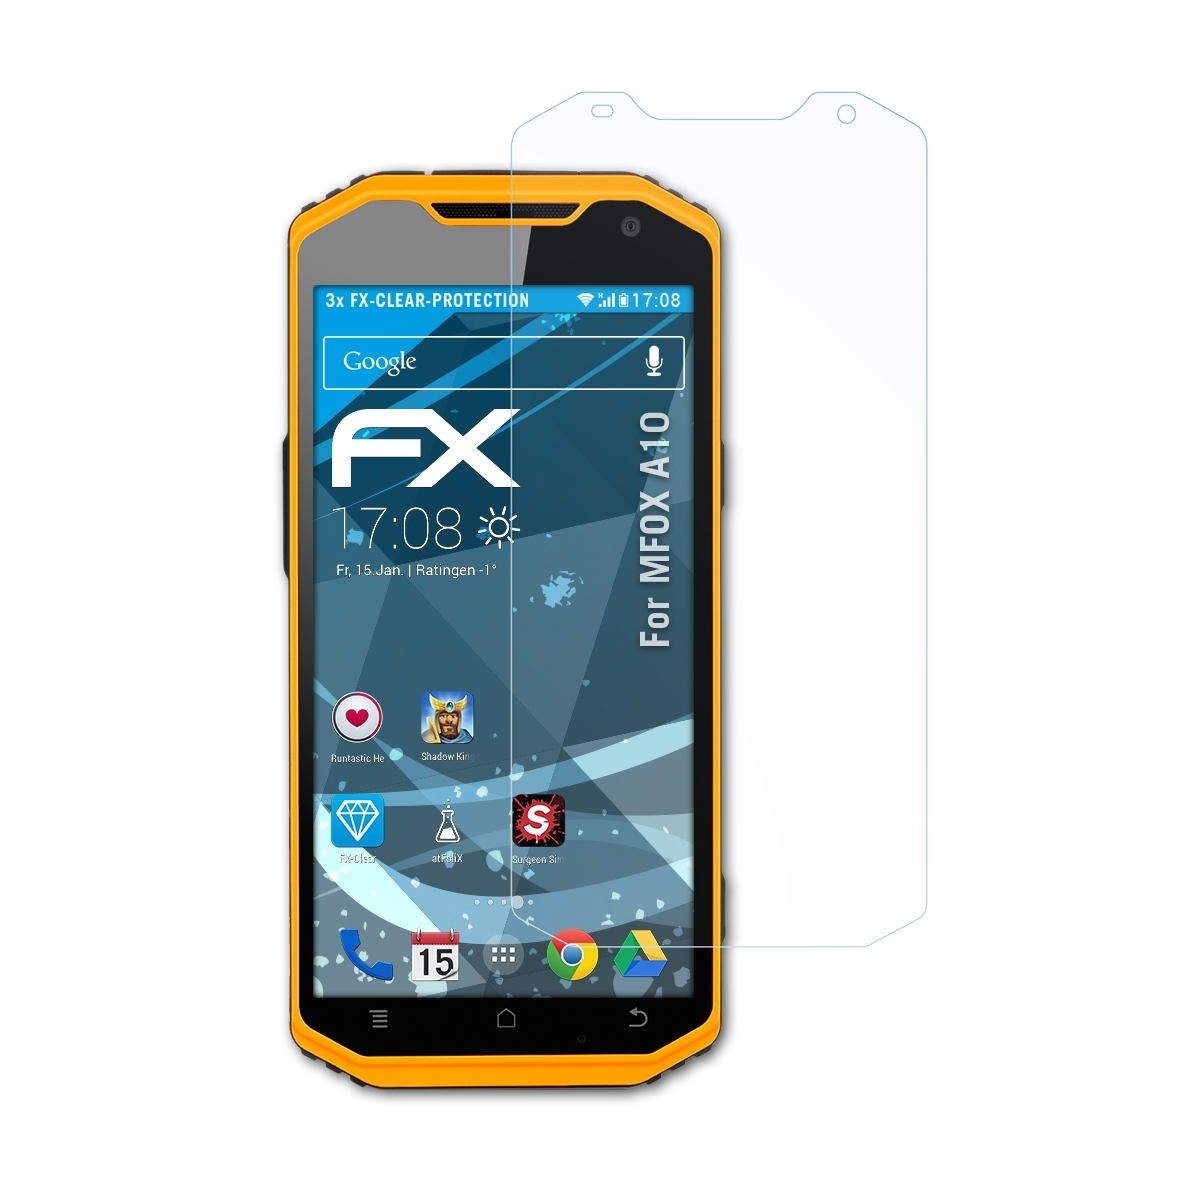 FX-Clear MFOX Displayschutz(für 3x ATFOLIX A10)